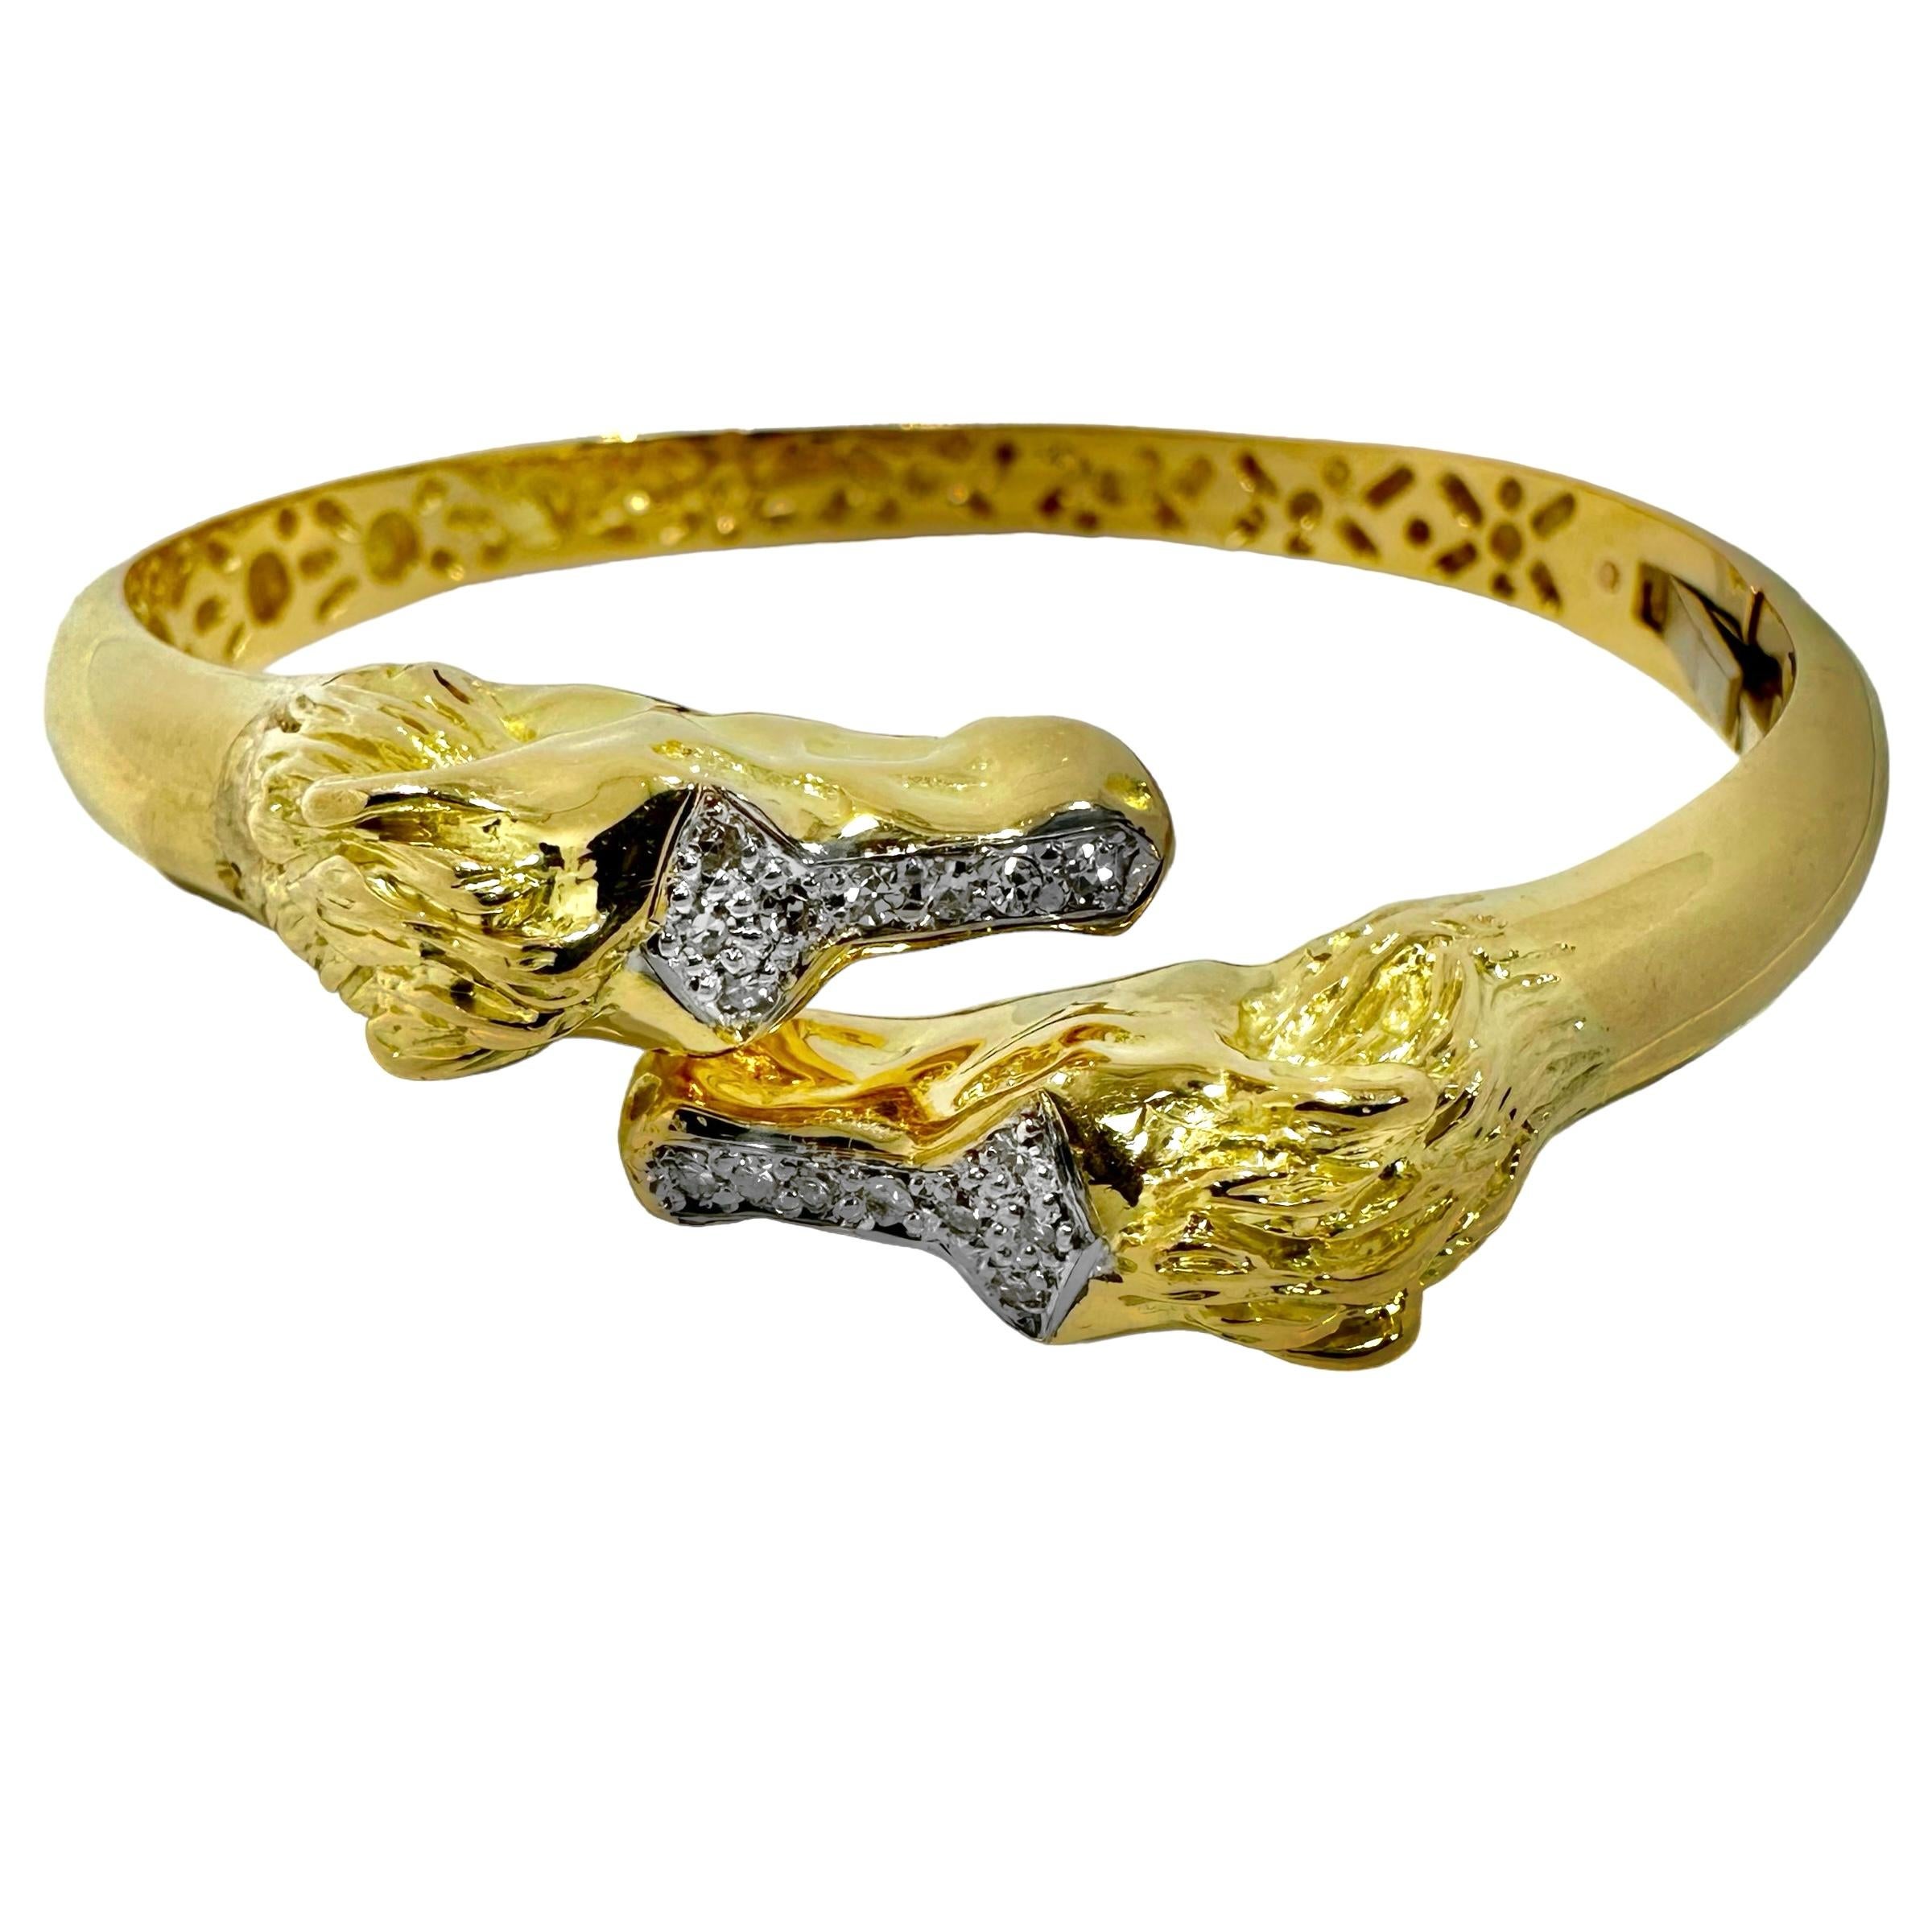 Ce charmant bracelet à charnière vintage en or jaune 18k présente deux têtes équestres bien détaillées se contournant l'une l'autre. Ce type de bracelet à pont est vraiment un favori de longue date. Des caricatures de chevaux plus vrais que nature